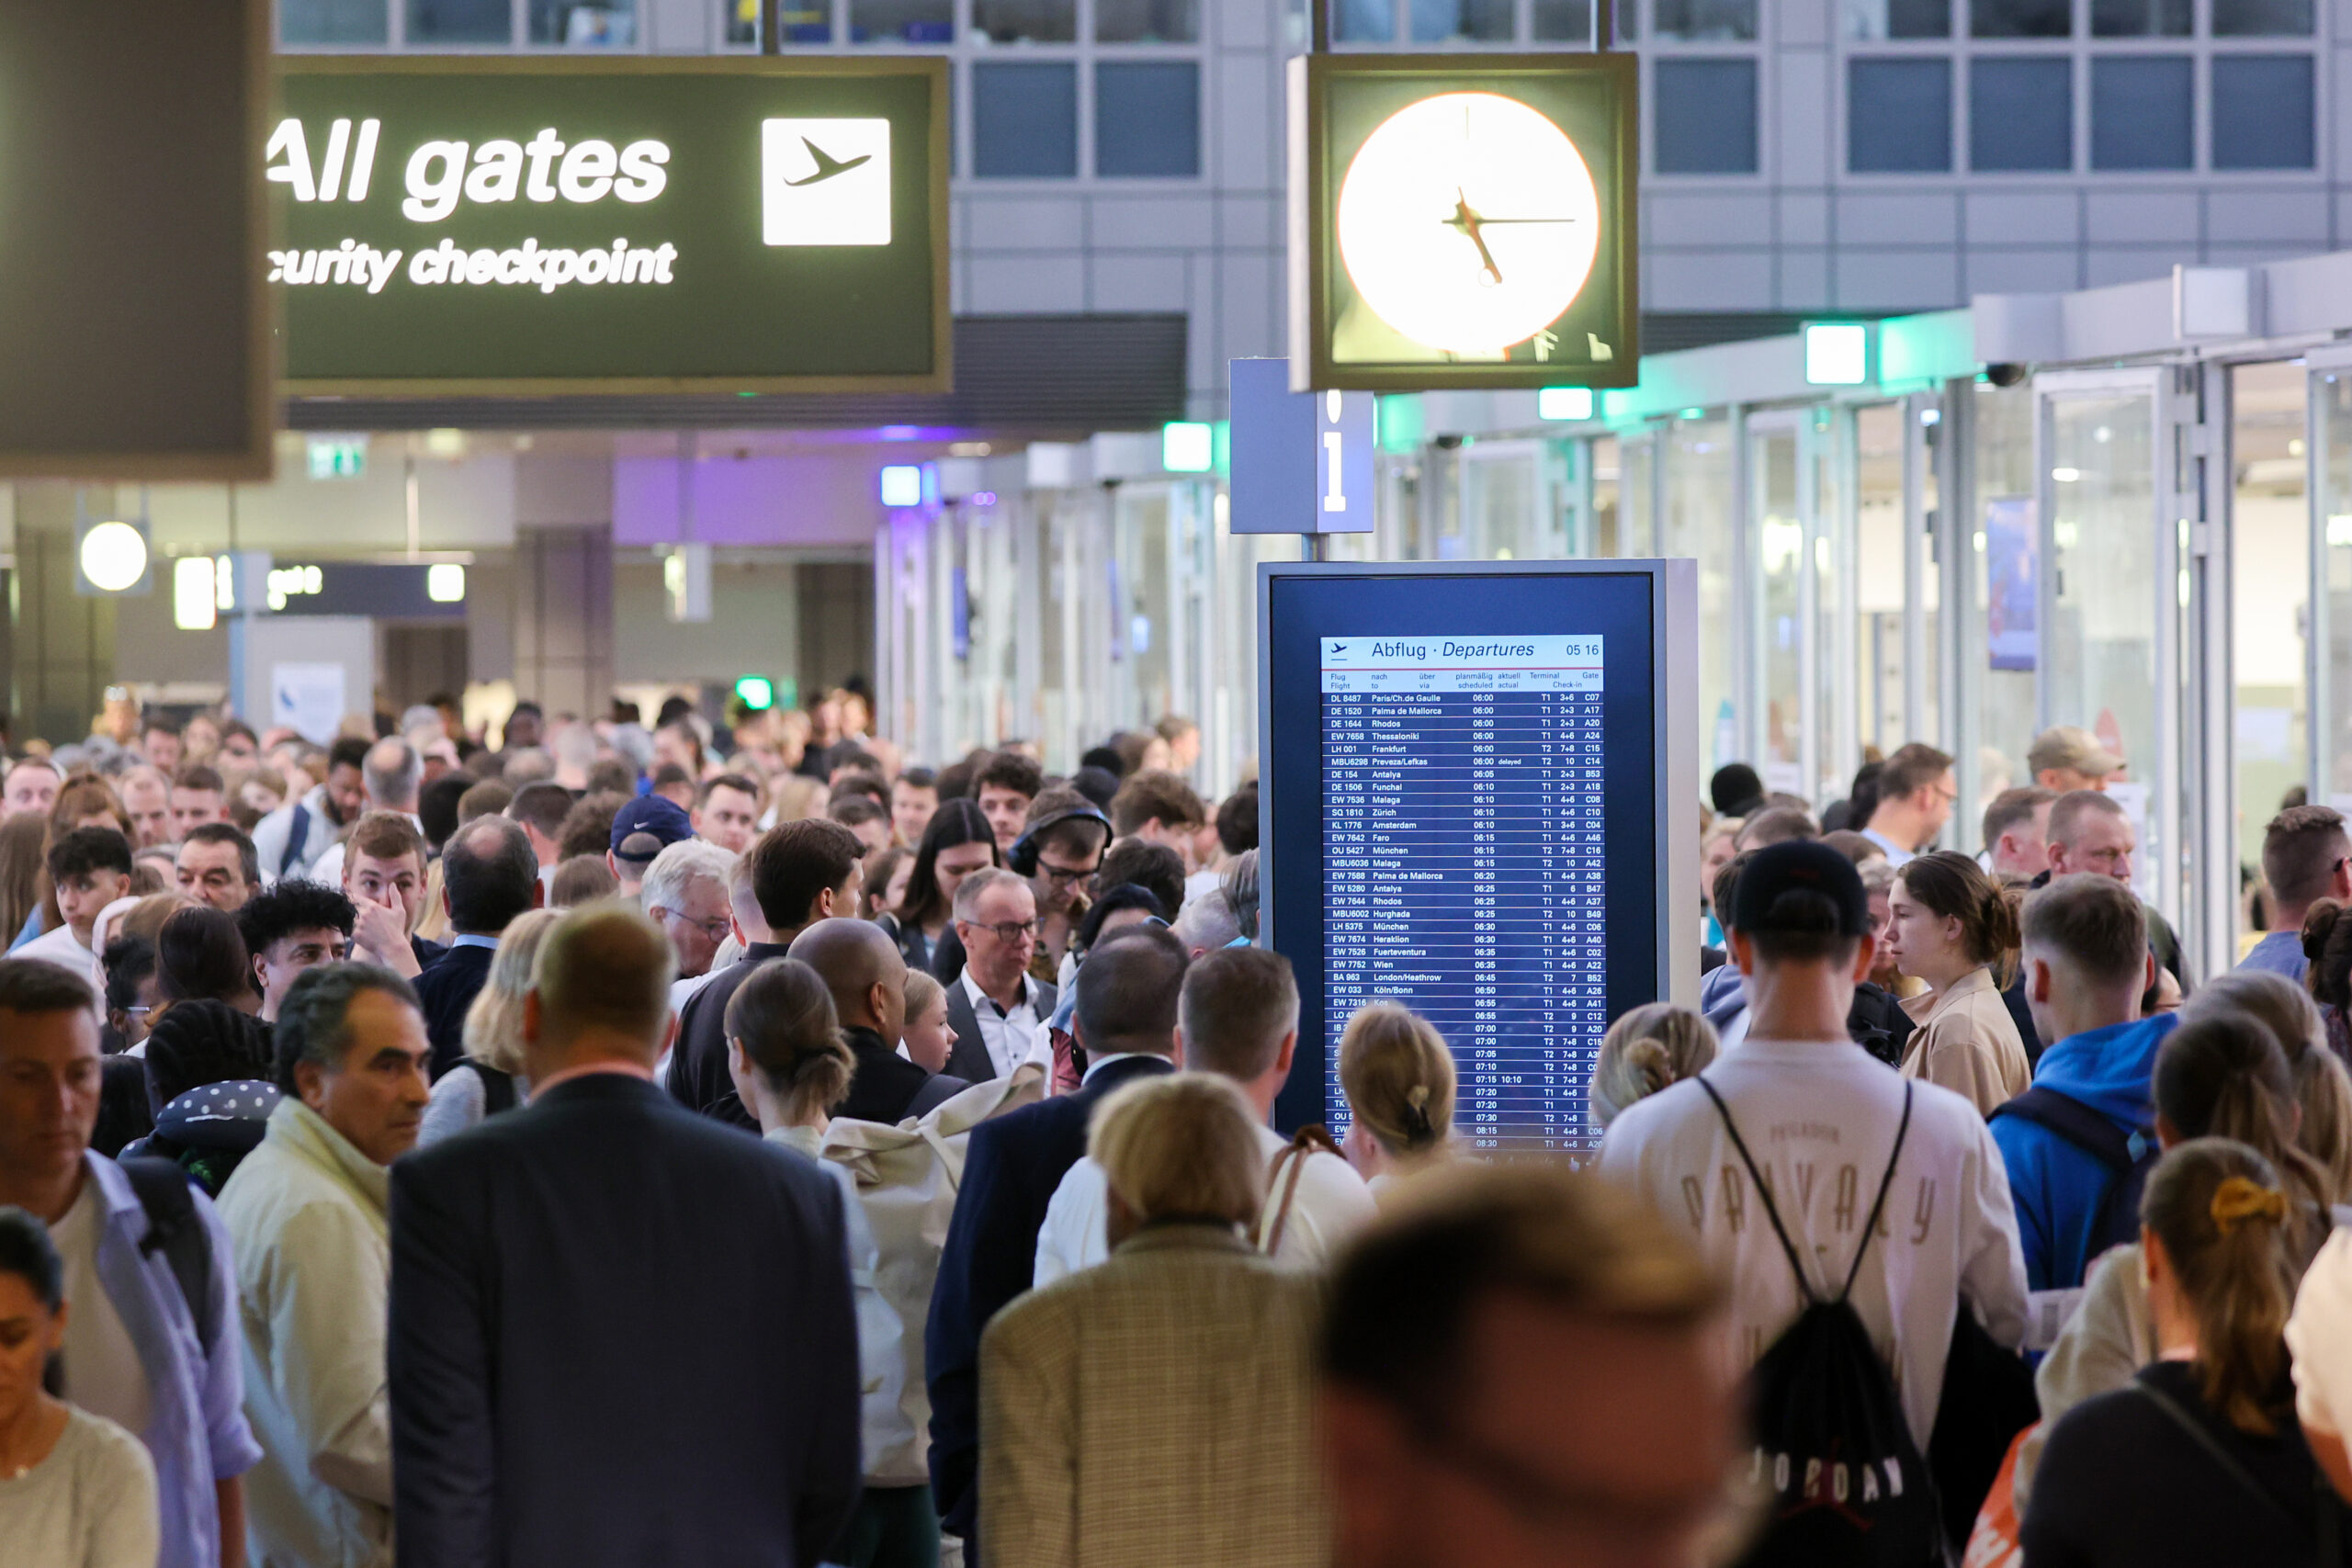 Reisende stehen in Warteschlangen an der Sicherheitskontrolle am Flughafen Hamburg. (Archivbild)